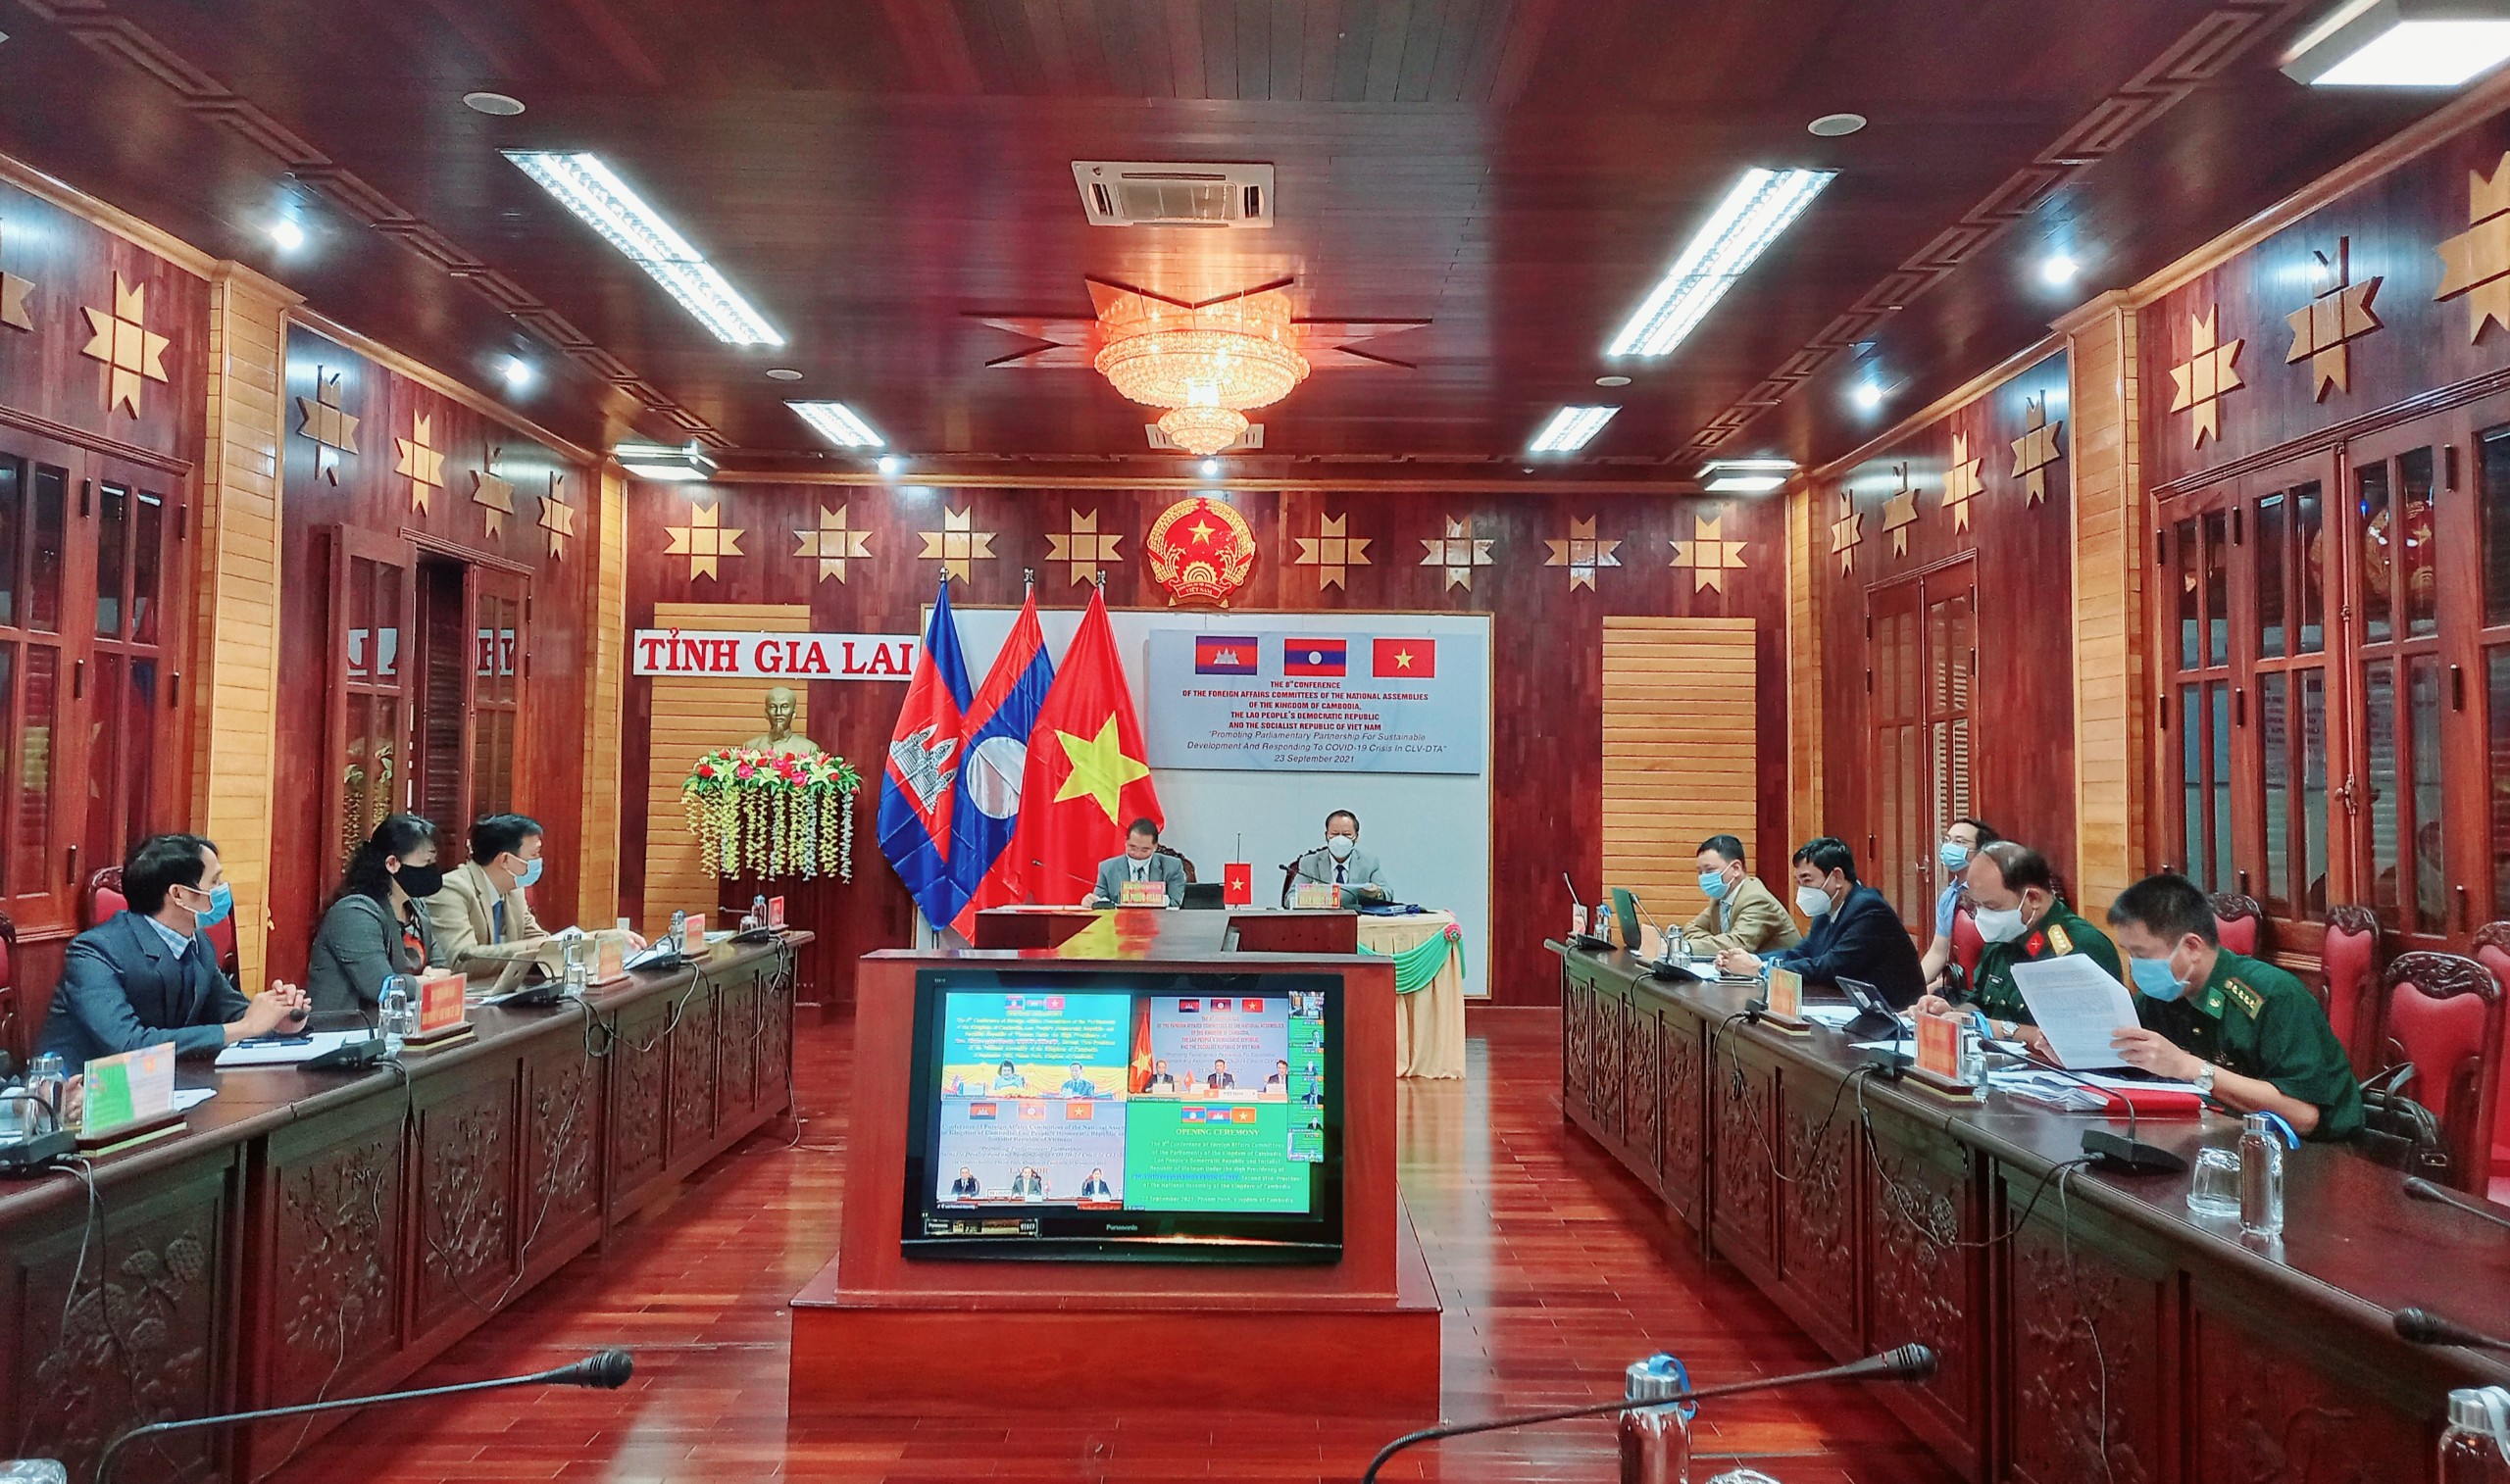 Cuộc họp ngoại giao tam quốc gồm Việt Nam - Campuchia - Lào đã diễn ra thành công, tạo ra một cơ hội để các quốc gia thảo luận về các vấn đề liên quan đến khu vực và thỏa thuận các biện pháp hợp tác cho lợi ích chung.